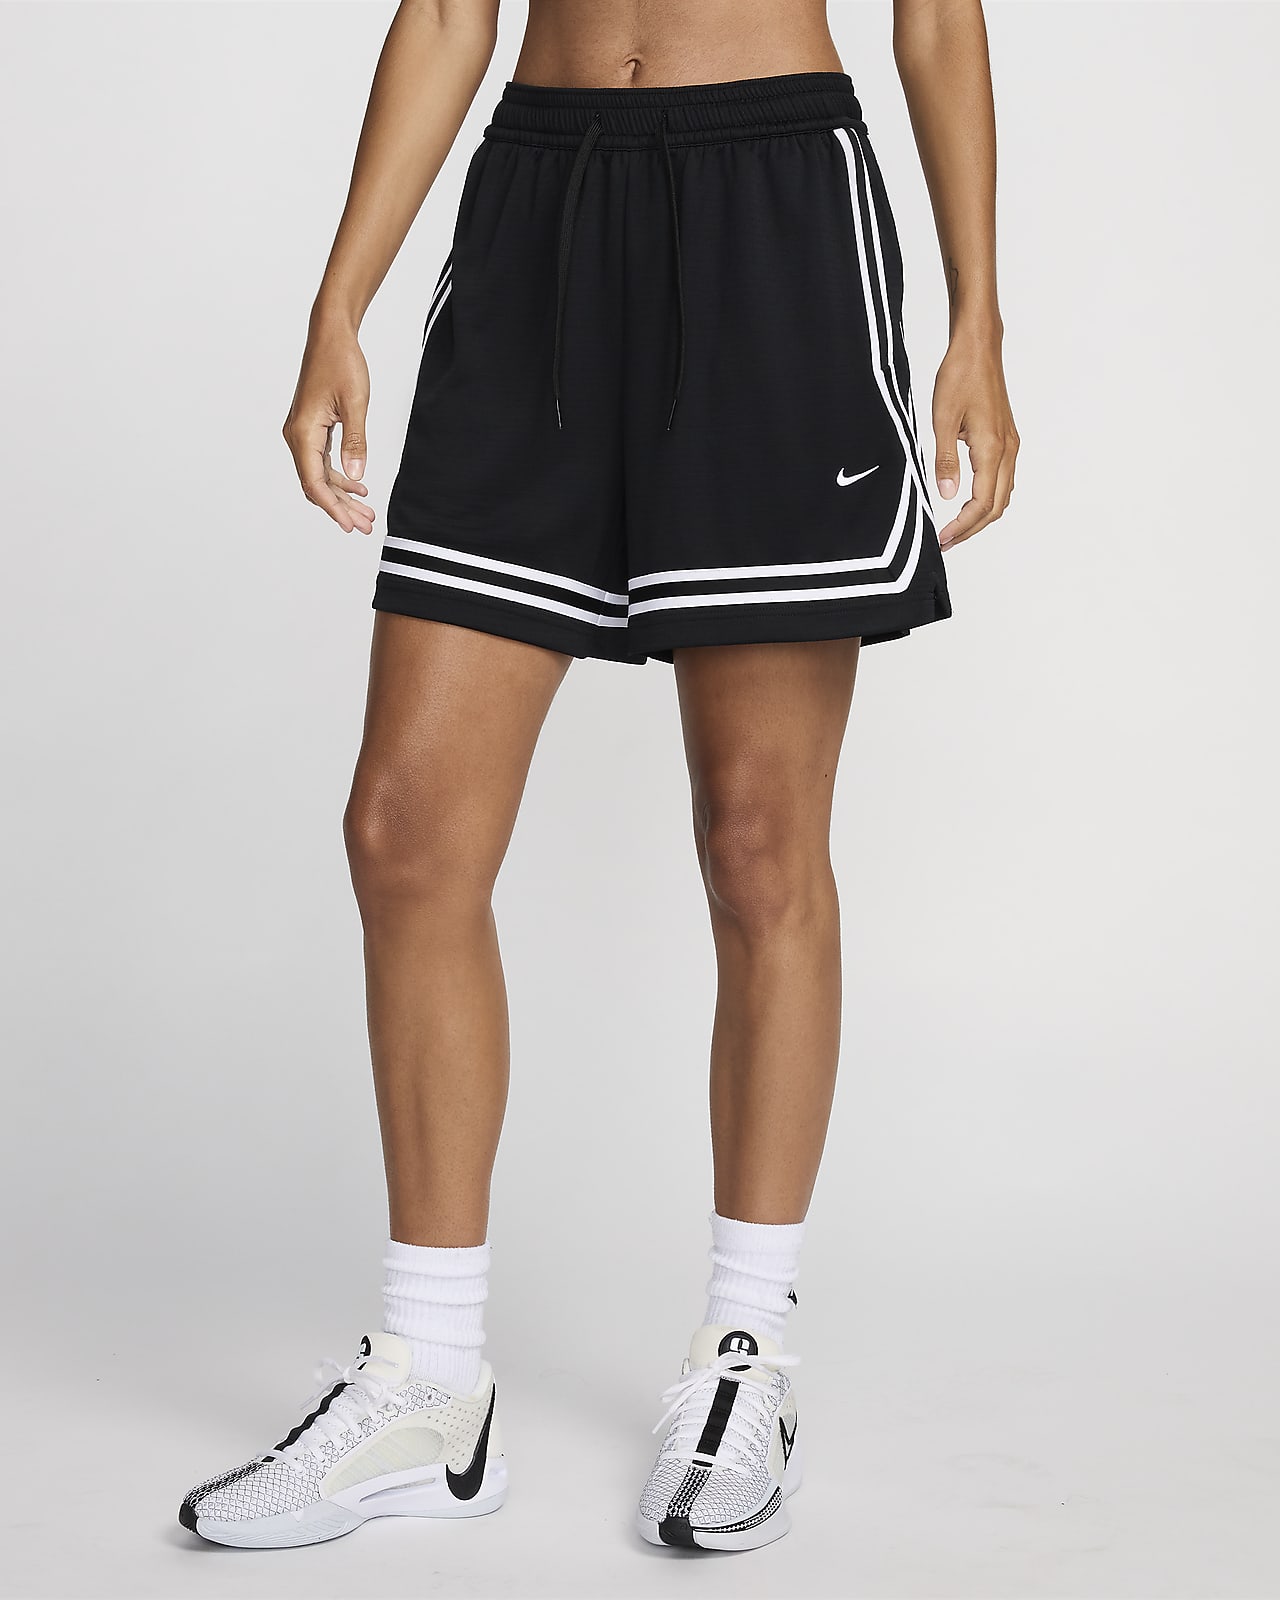 Shorts de básquetbol Dri-FIT de 13 cm para mujer Nike Crossover